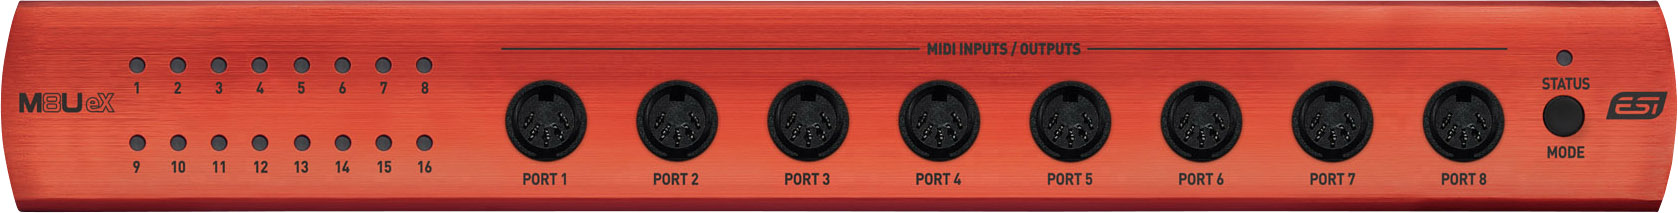 Interface MIDI ESI audio M8U EX